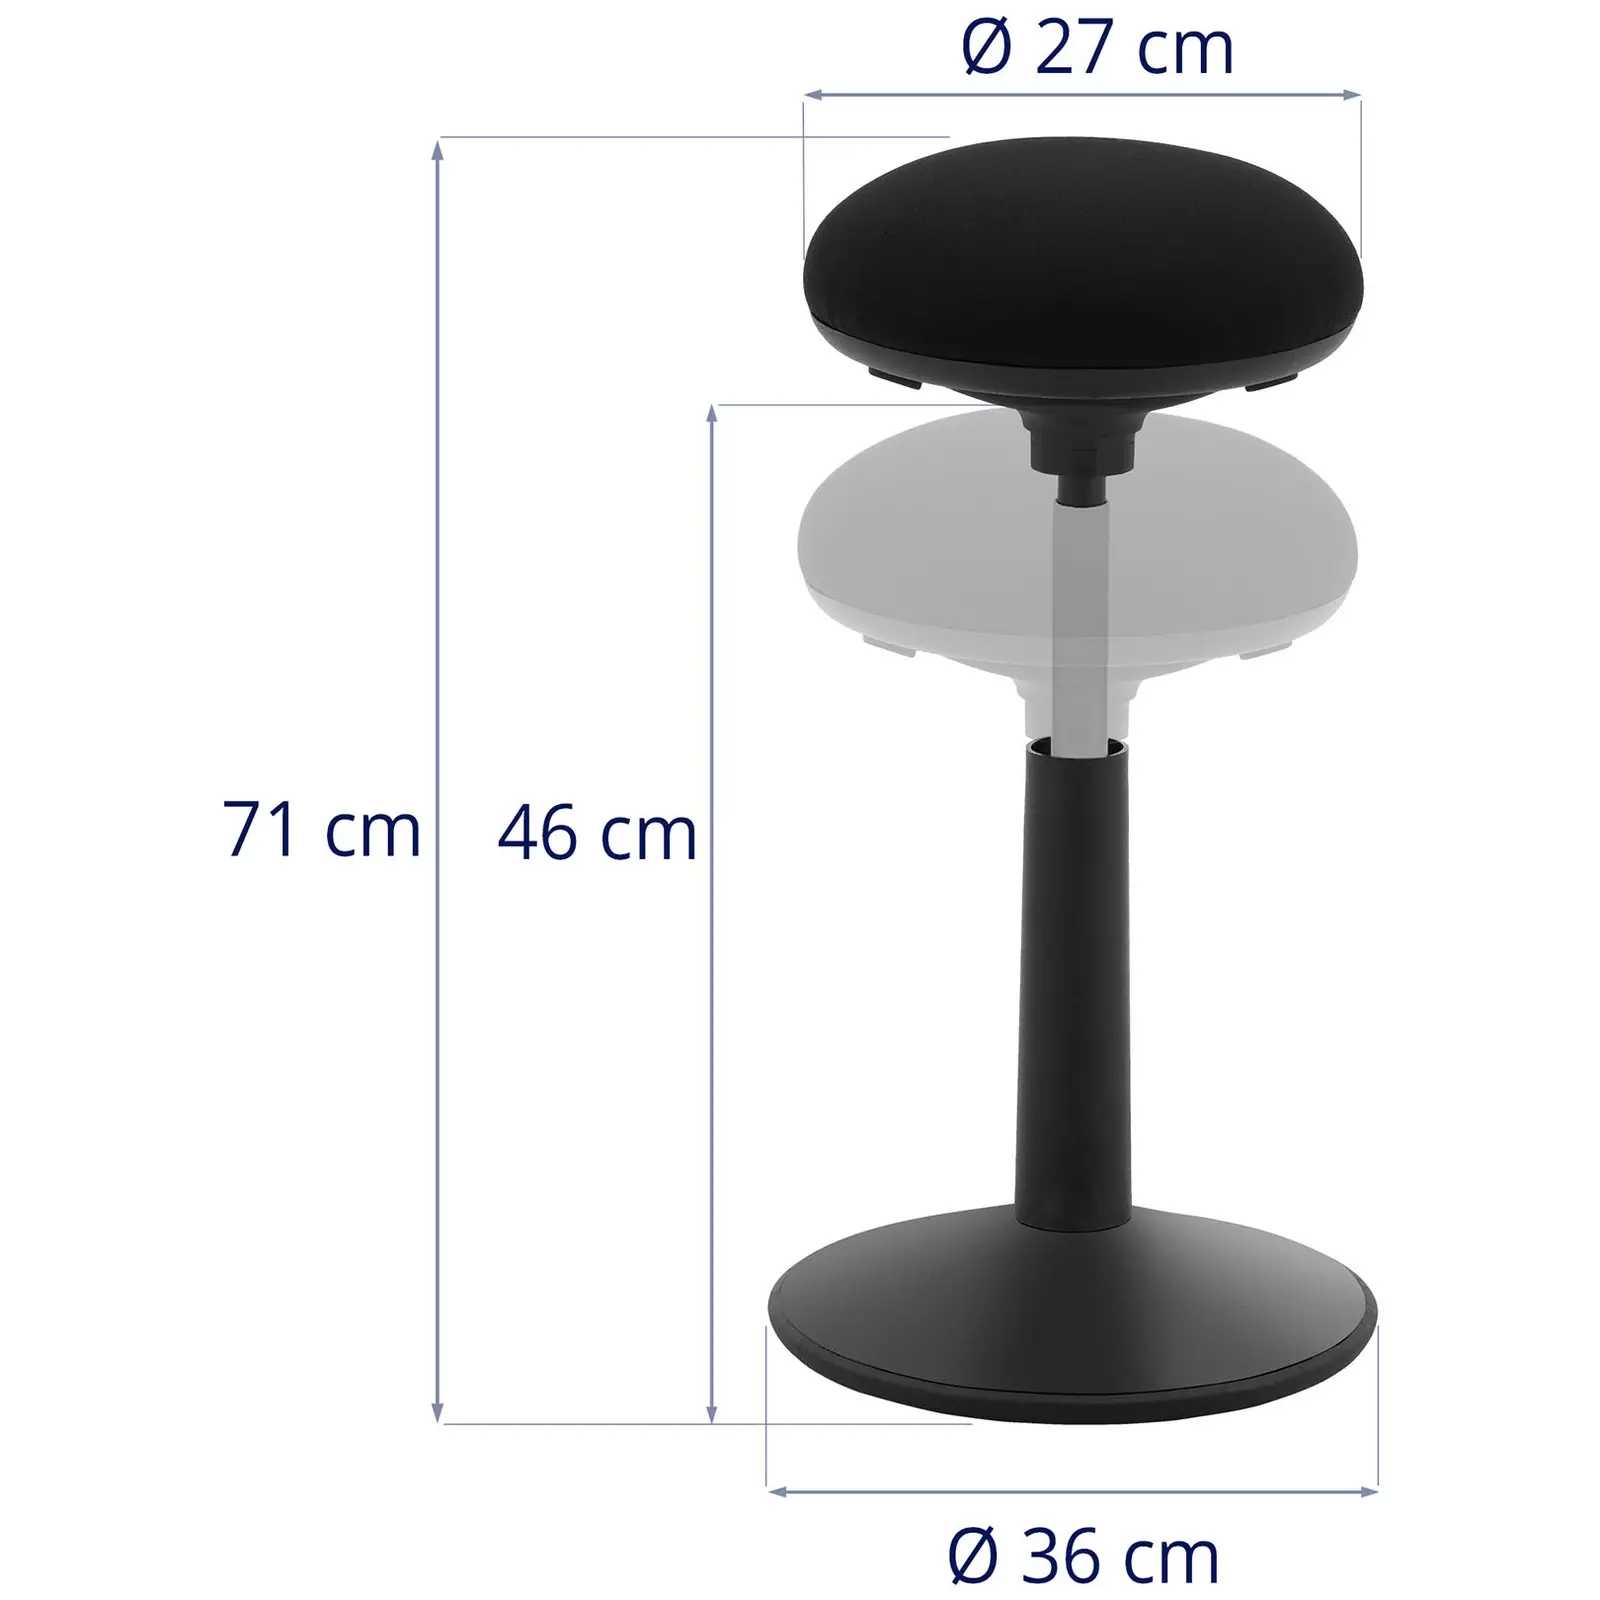 Stołek balansujący - stal / sklejka / nylon - maks. 100 kg - czarny